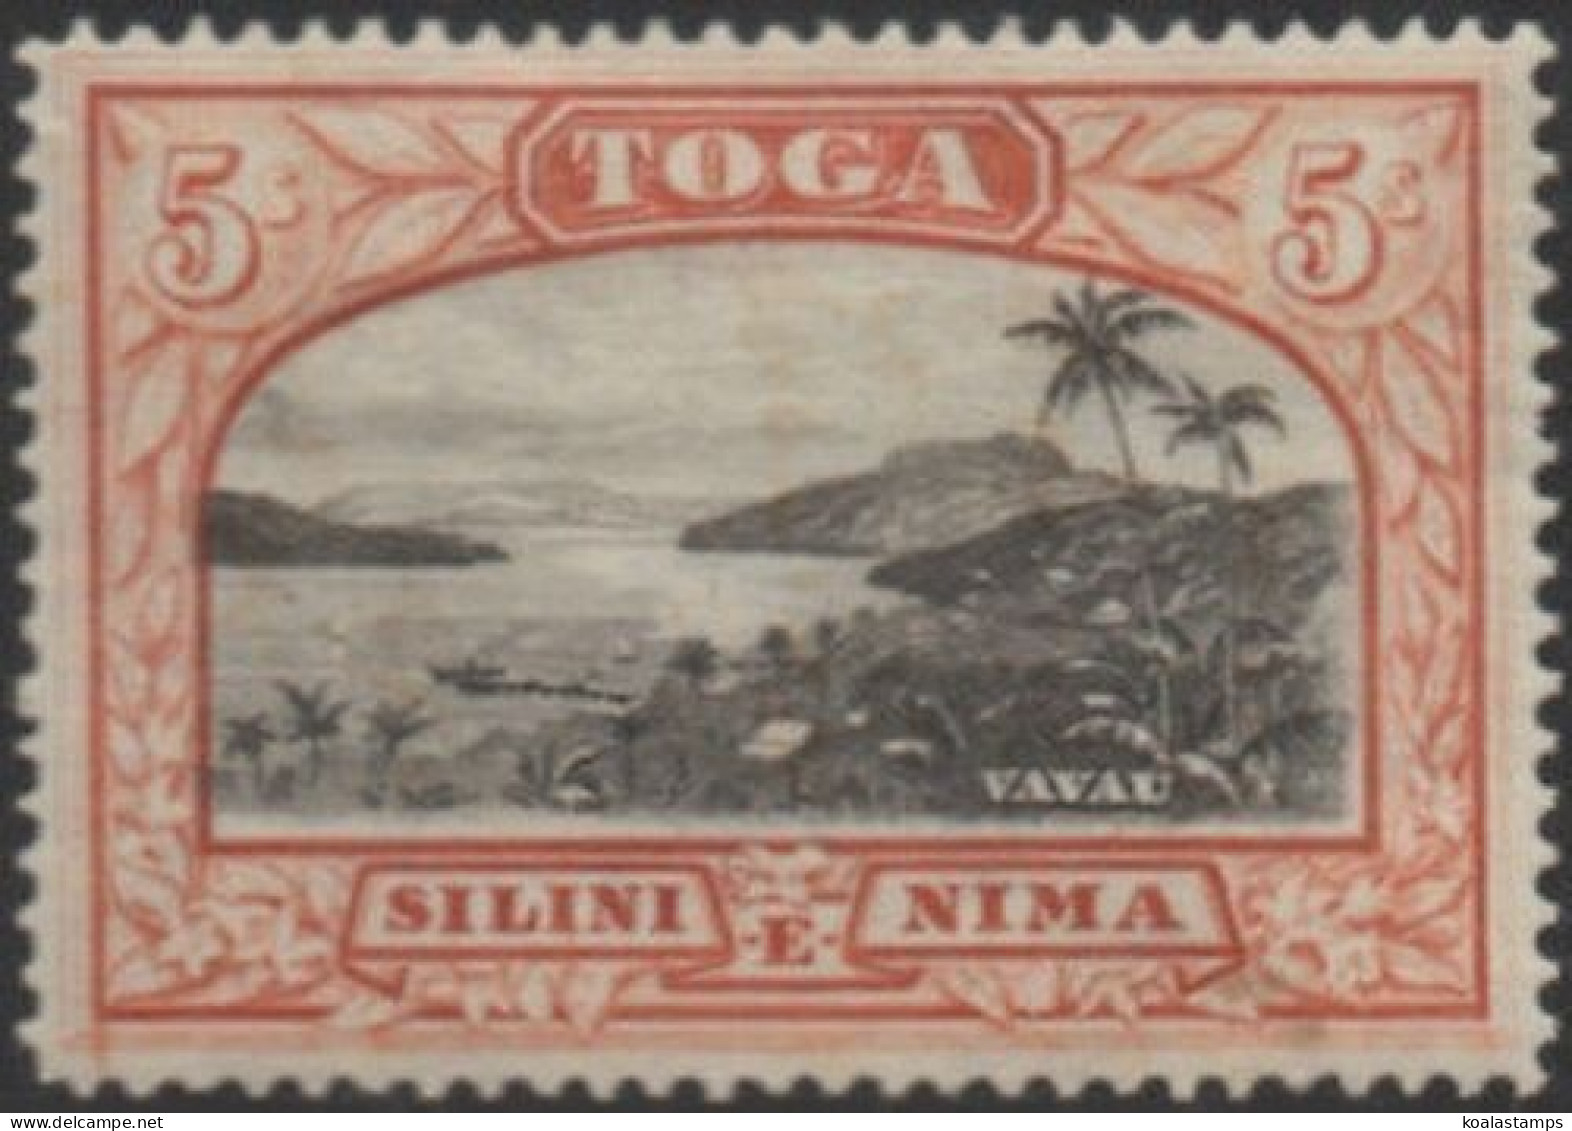 Tonga 1943 SG82 5/- Vavau Harbour MLH - Tonga (1970-...)